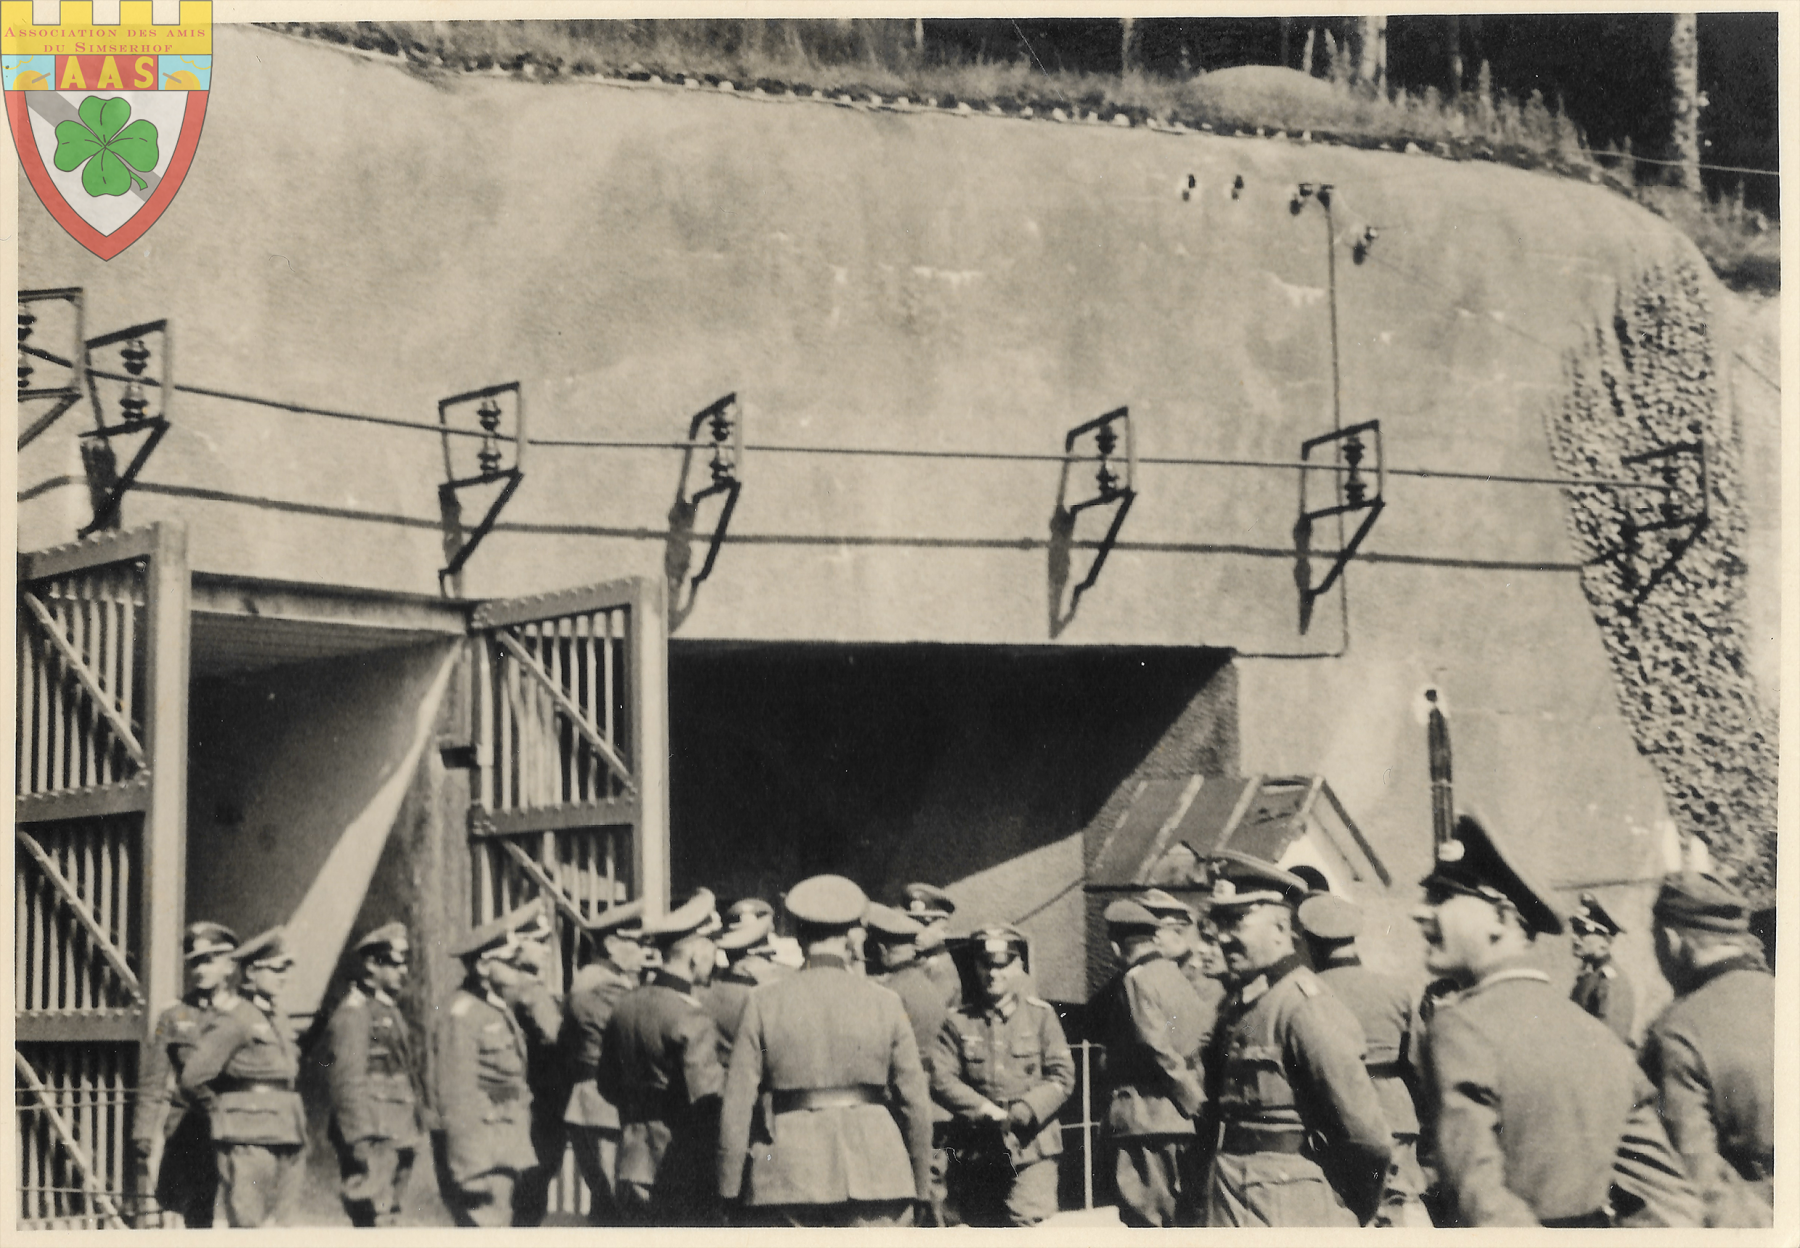 Ligne Maginot - SIMSERHOF - (Ouvrage d'artillerie) - Soldats allemands devant l'entrée munition.